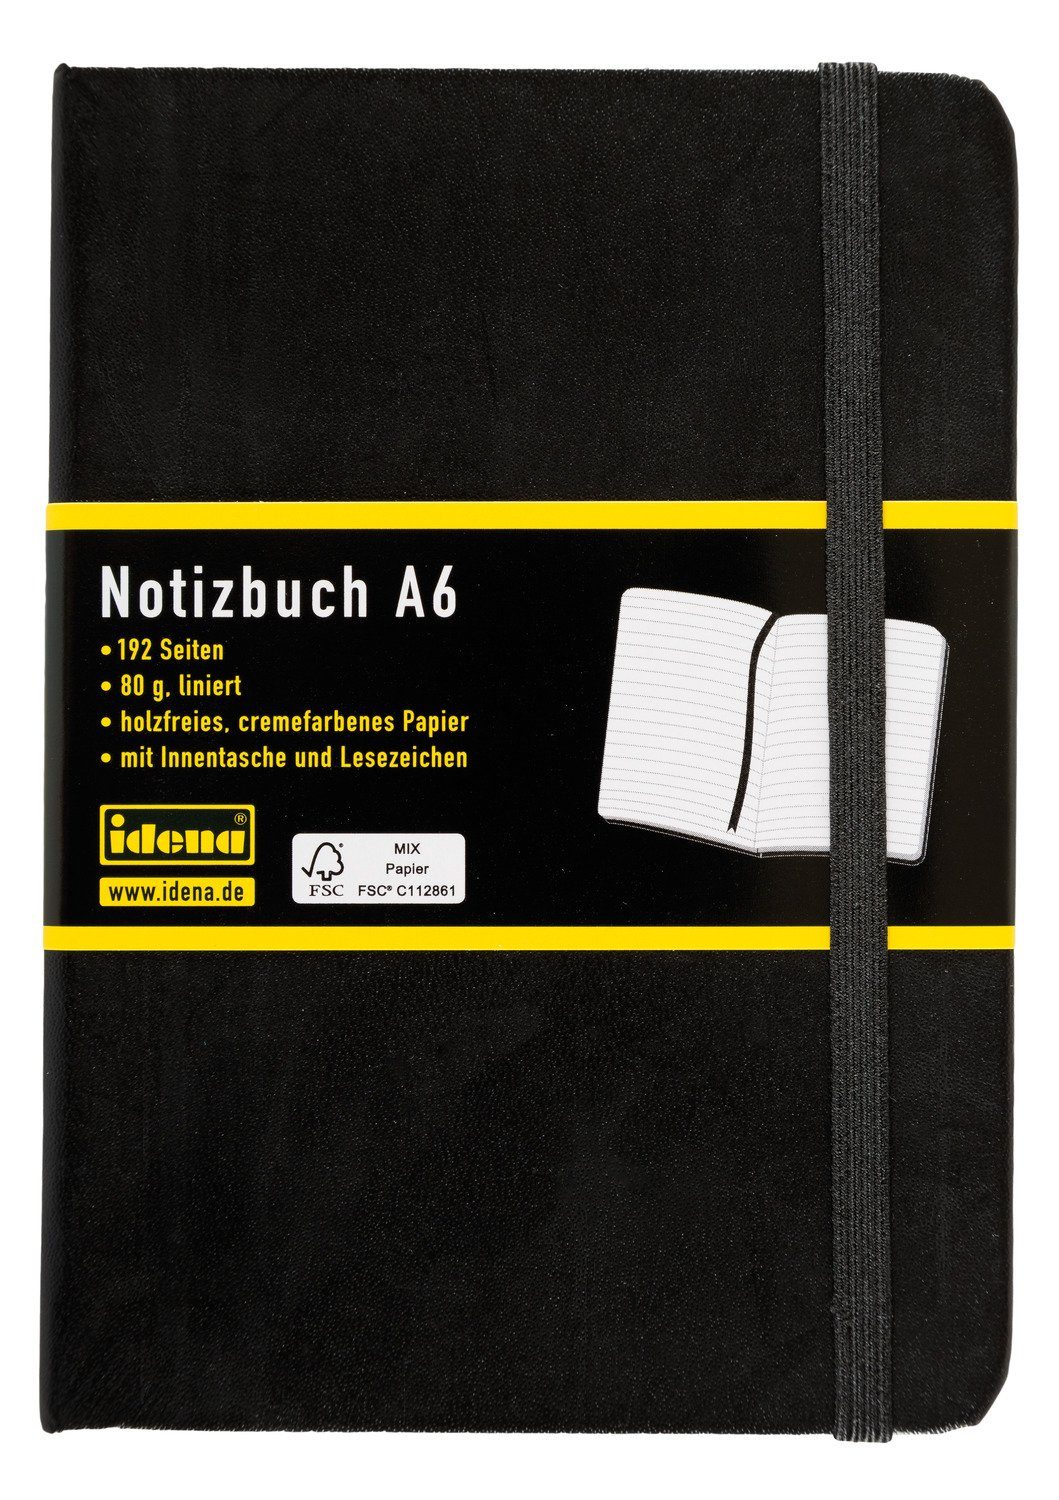 Idena Notizbuch Idena 209285 - Notizbuch DIN A6, liniert, Papier cremefarben, 192